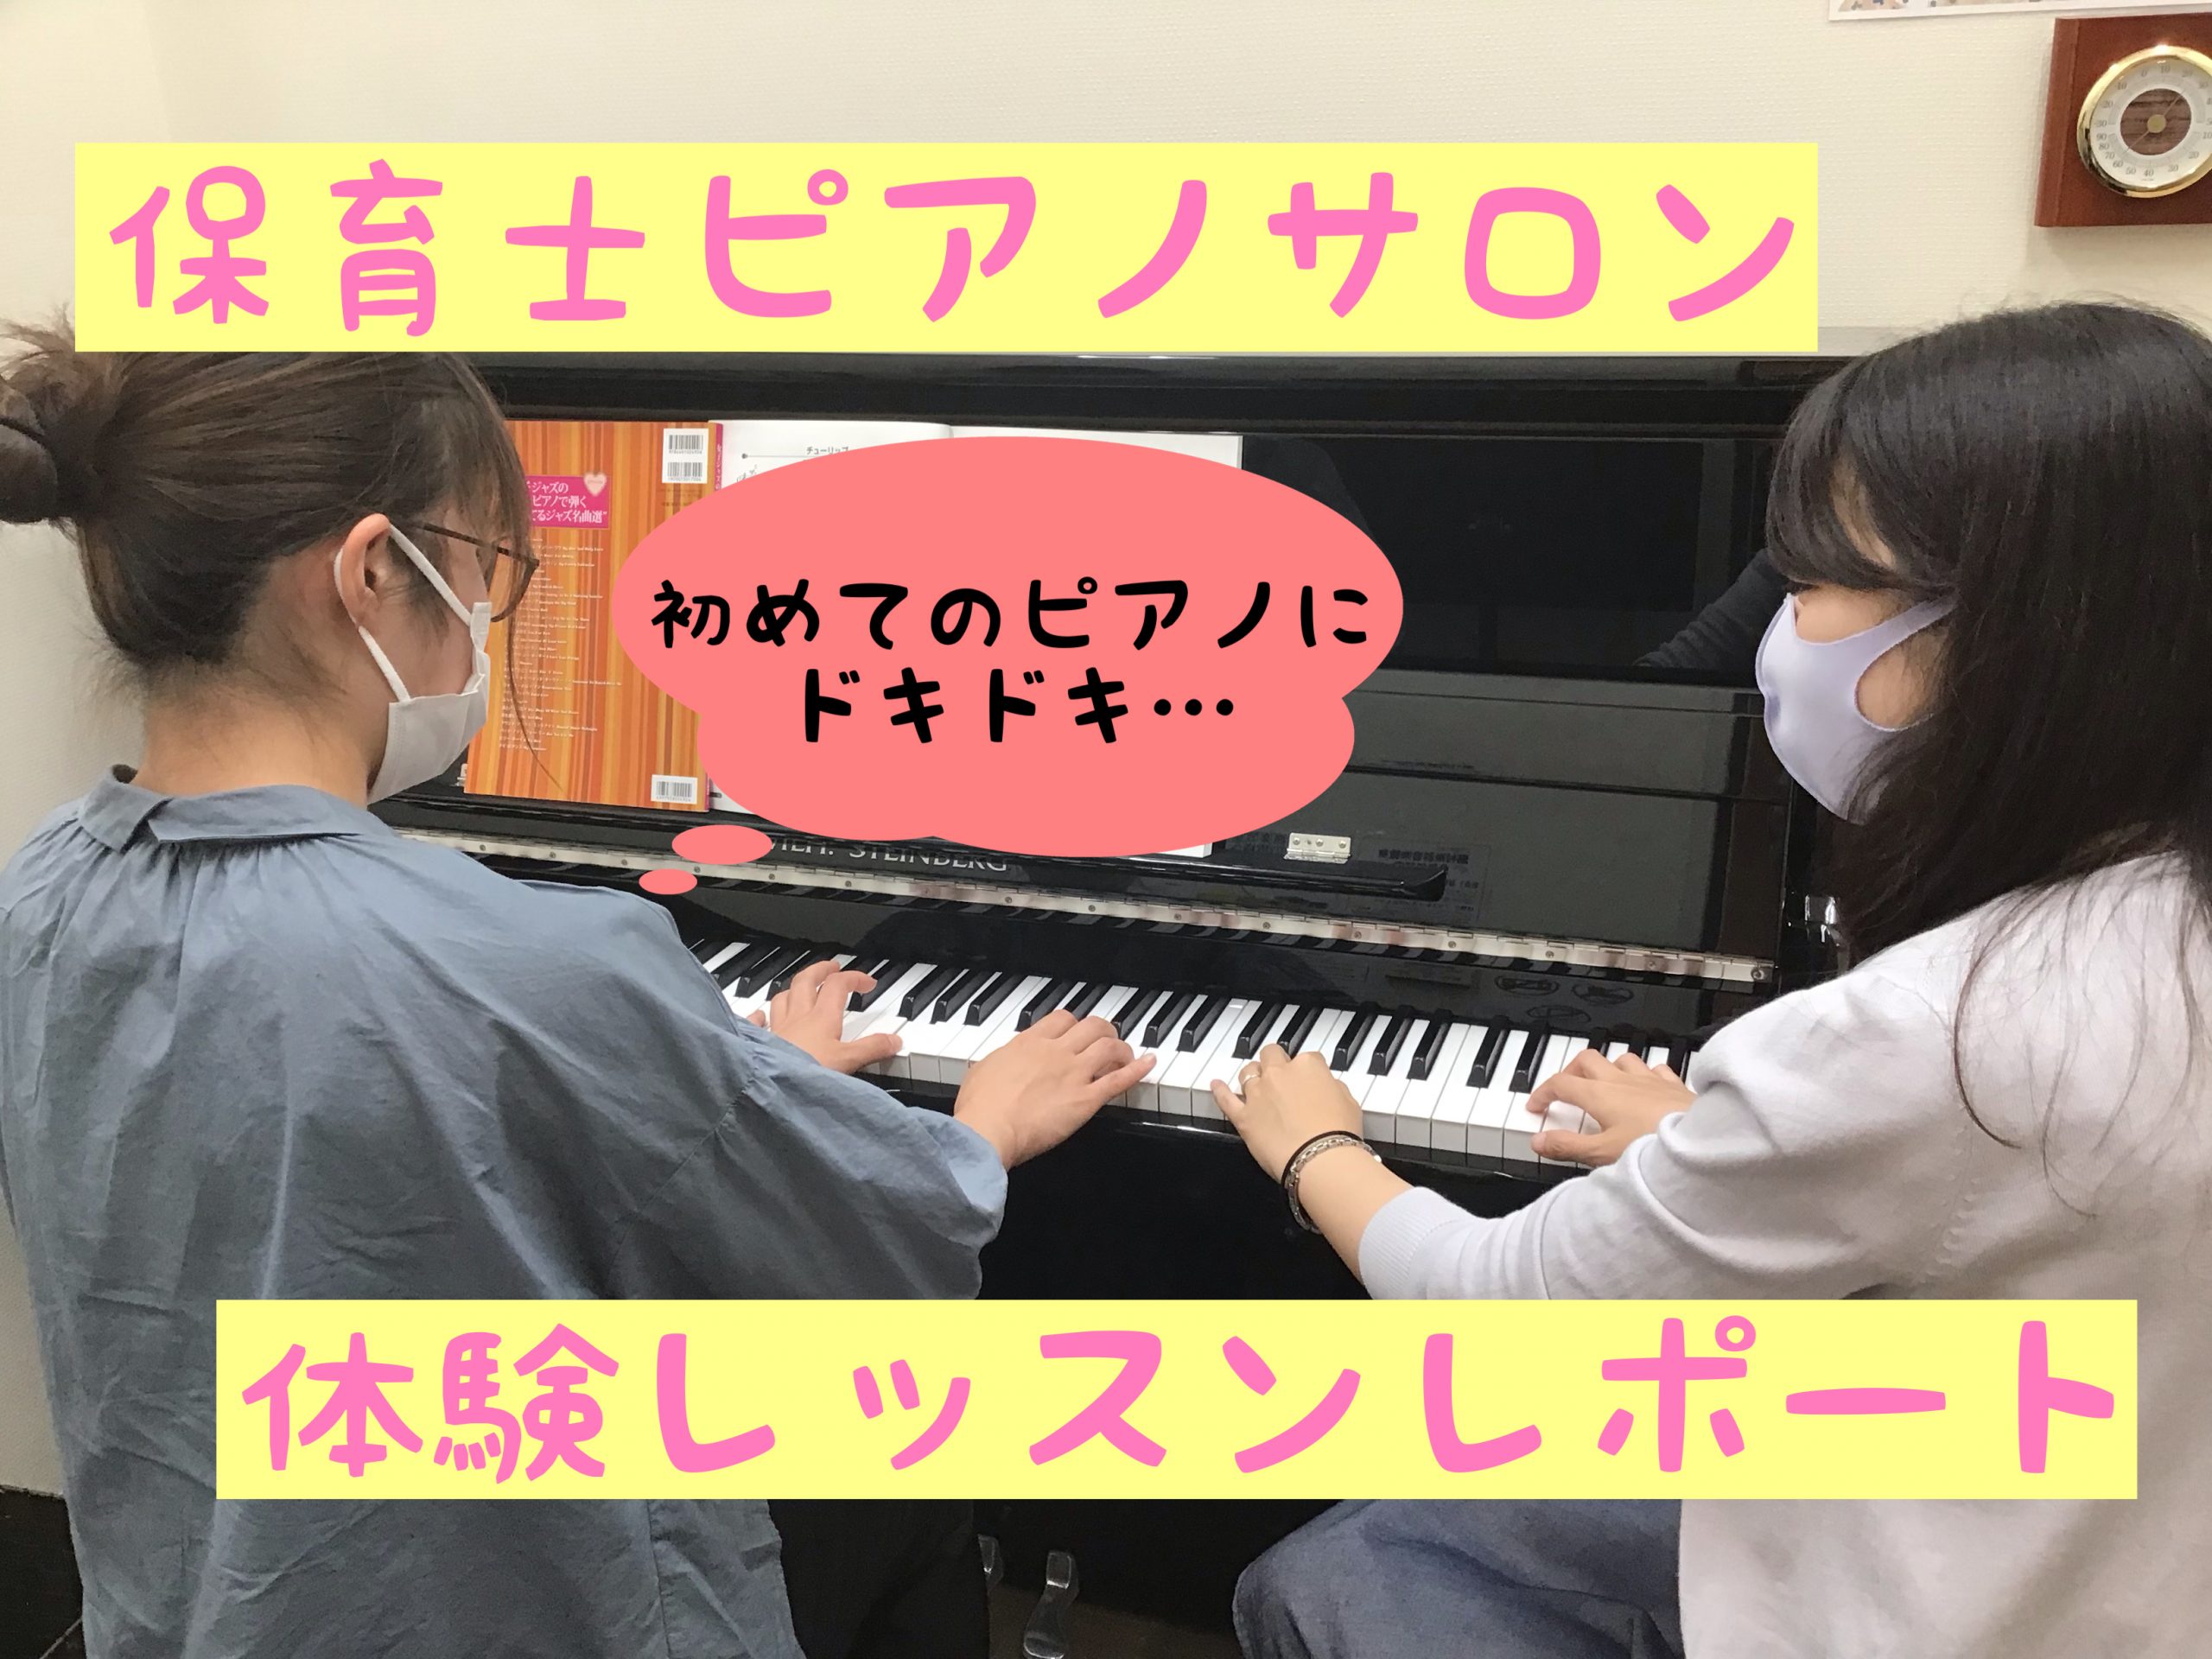 *スタッフが保育士ピアノサロンのレッスンを体験してみました！ こんにちは。島村楽器ビビット南船橋店の平井です。 今回は[https://www.shimamura.co.jp/shop/funabashi/lesson-info/20170408/351:title=保育士ピアノサロン]の体験レッス […]